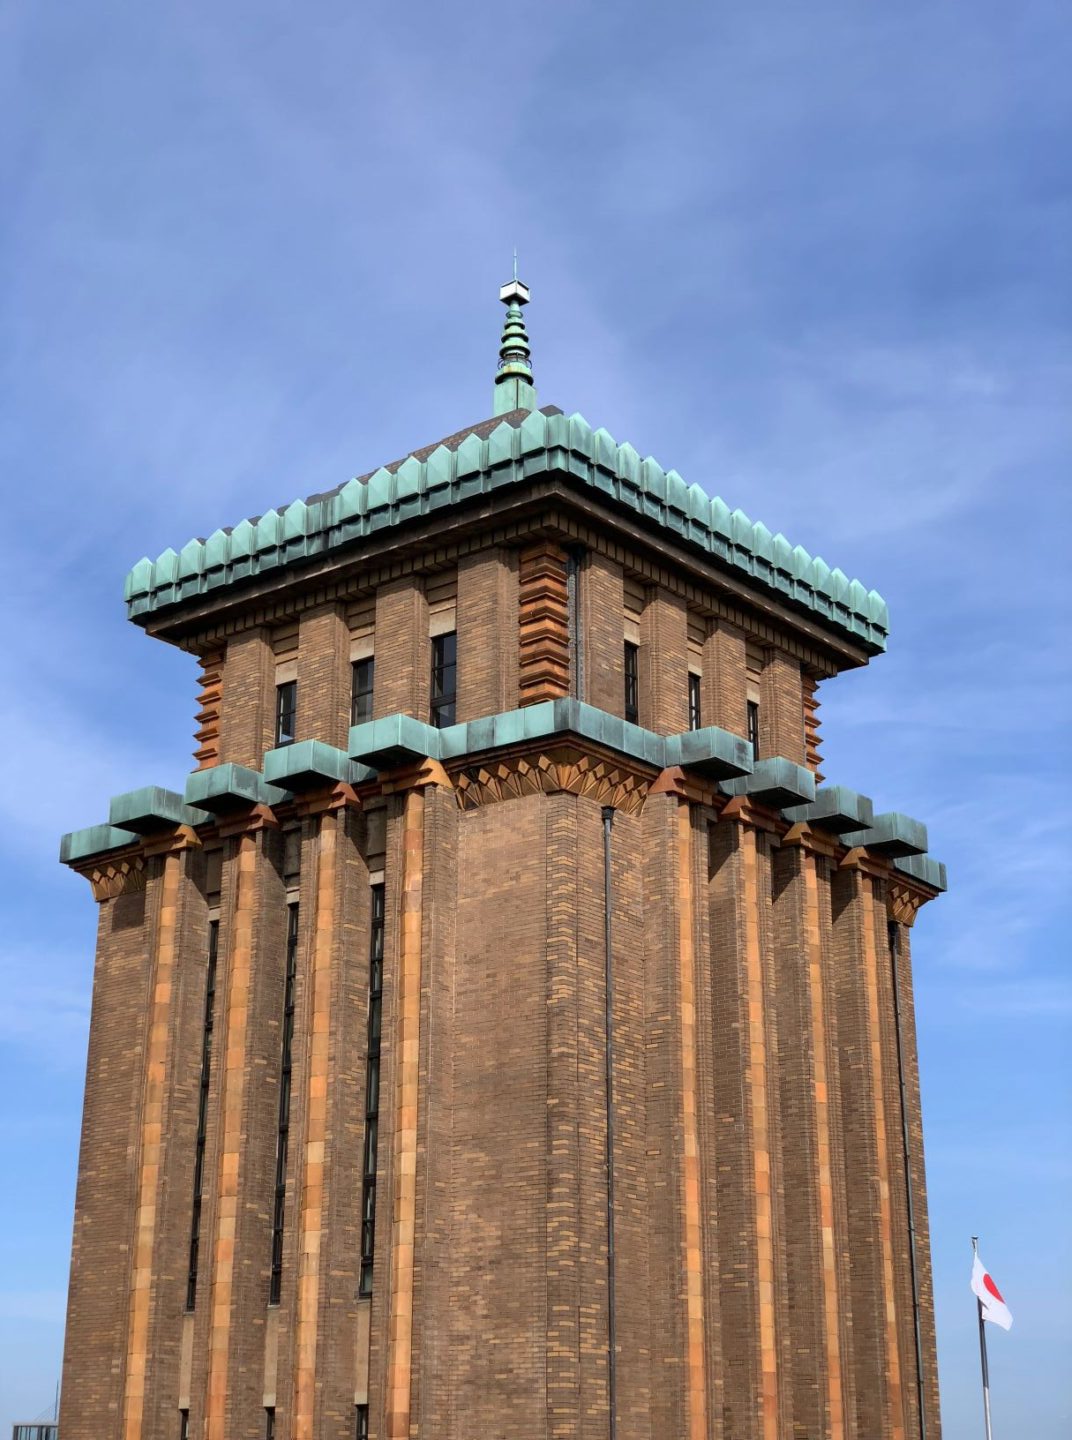 キングの塔 - King's Tower